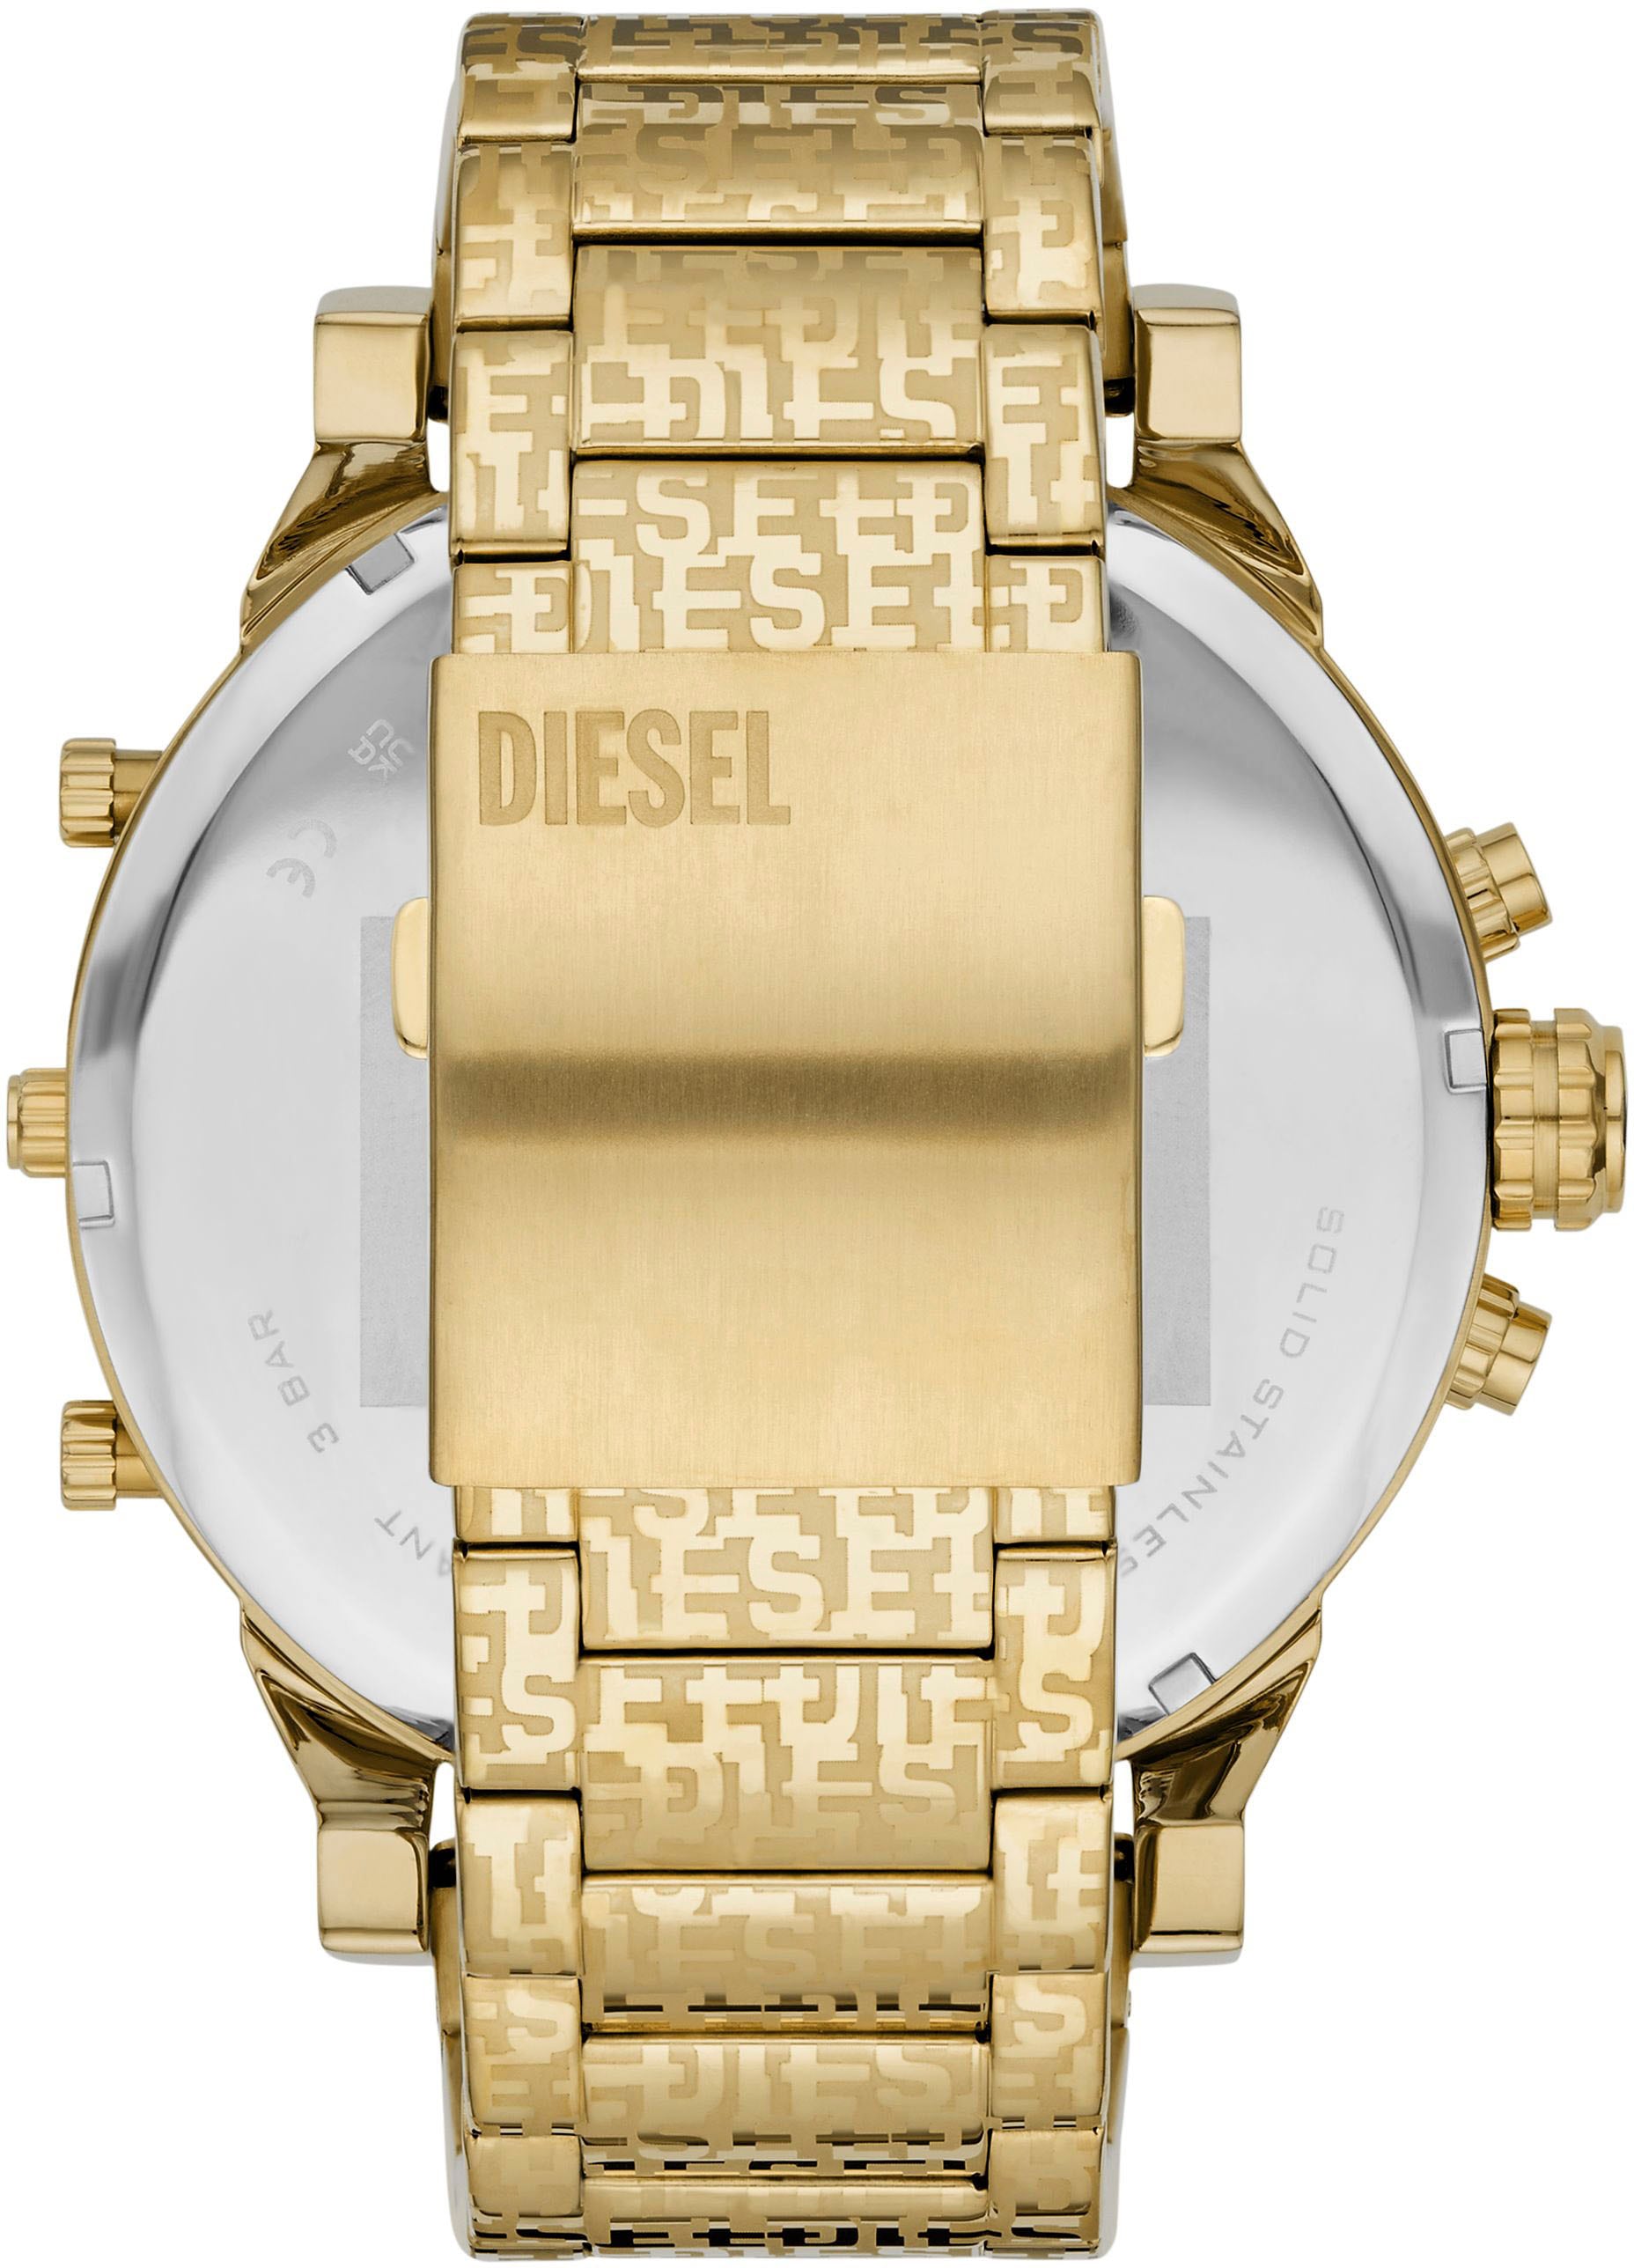 Diesel Chronograph »MR. DADDY 2.0, DZ7479«, Quarzuhr, Armbanduhr, Herren, Datum, Stoppfunktion, mehrere Zeitzonen